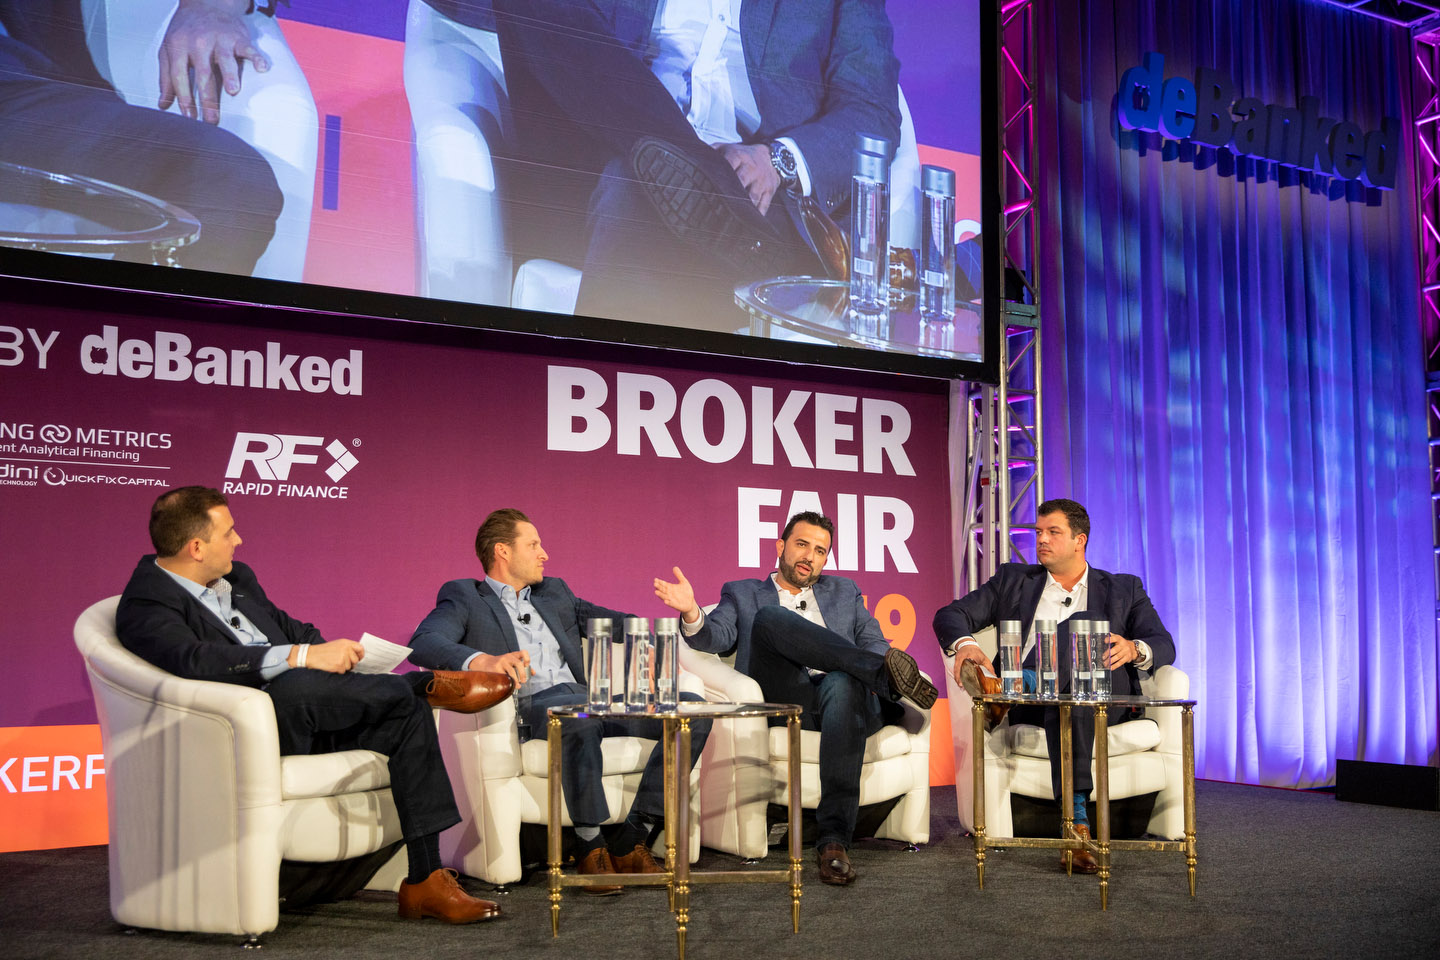 Broker Fair 2019 - Presented by deBanked - 241